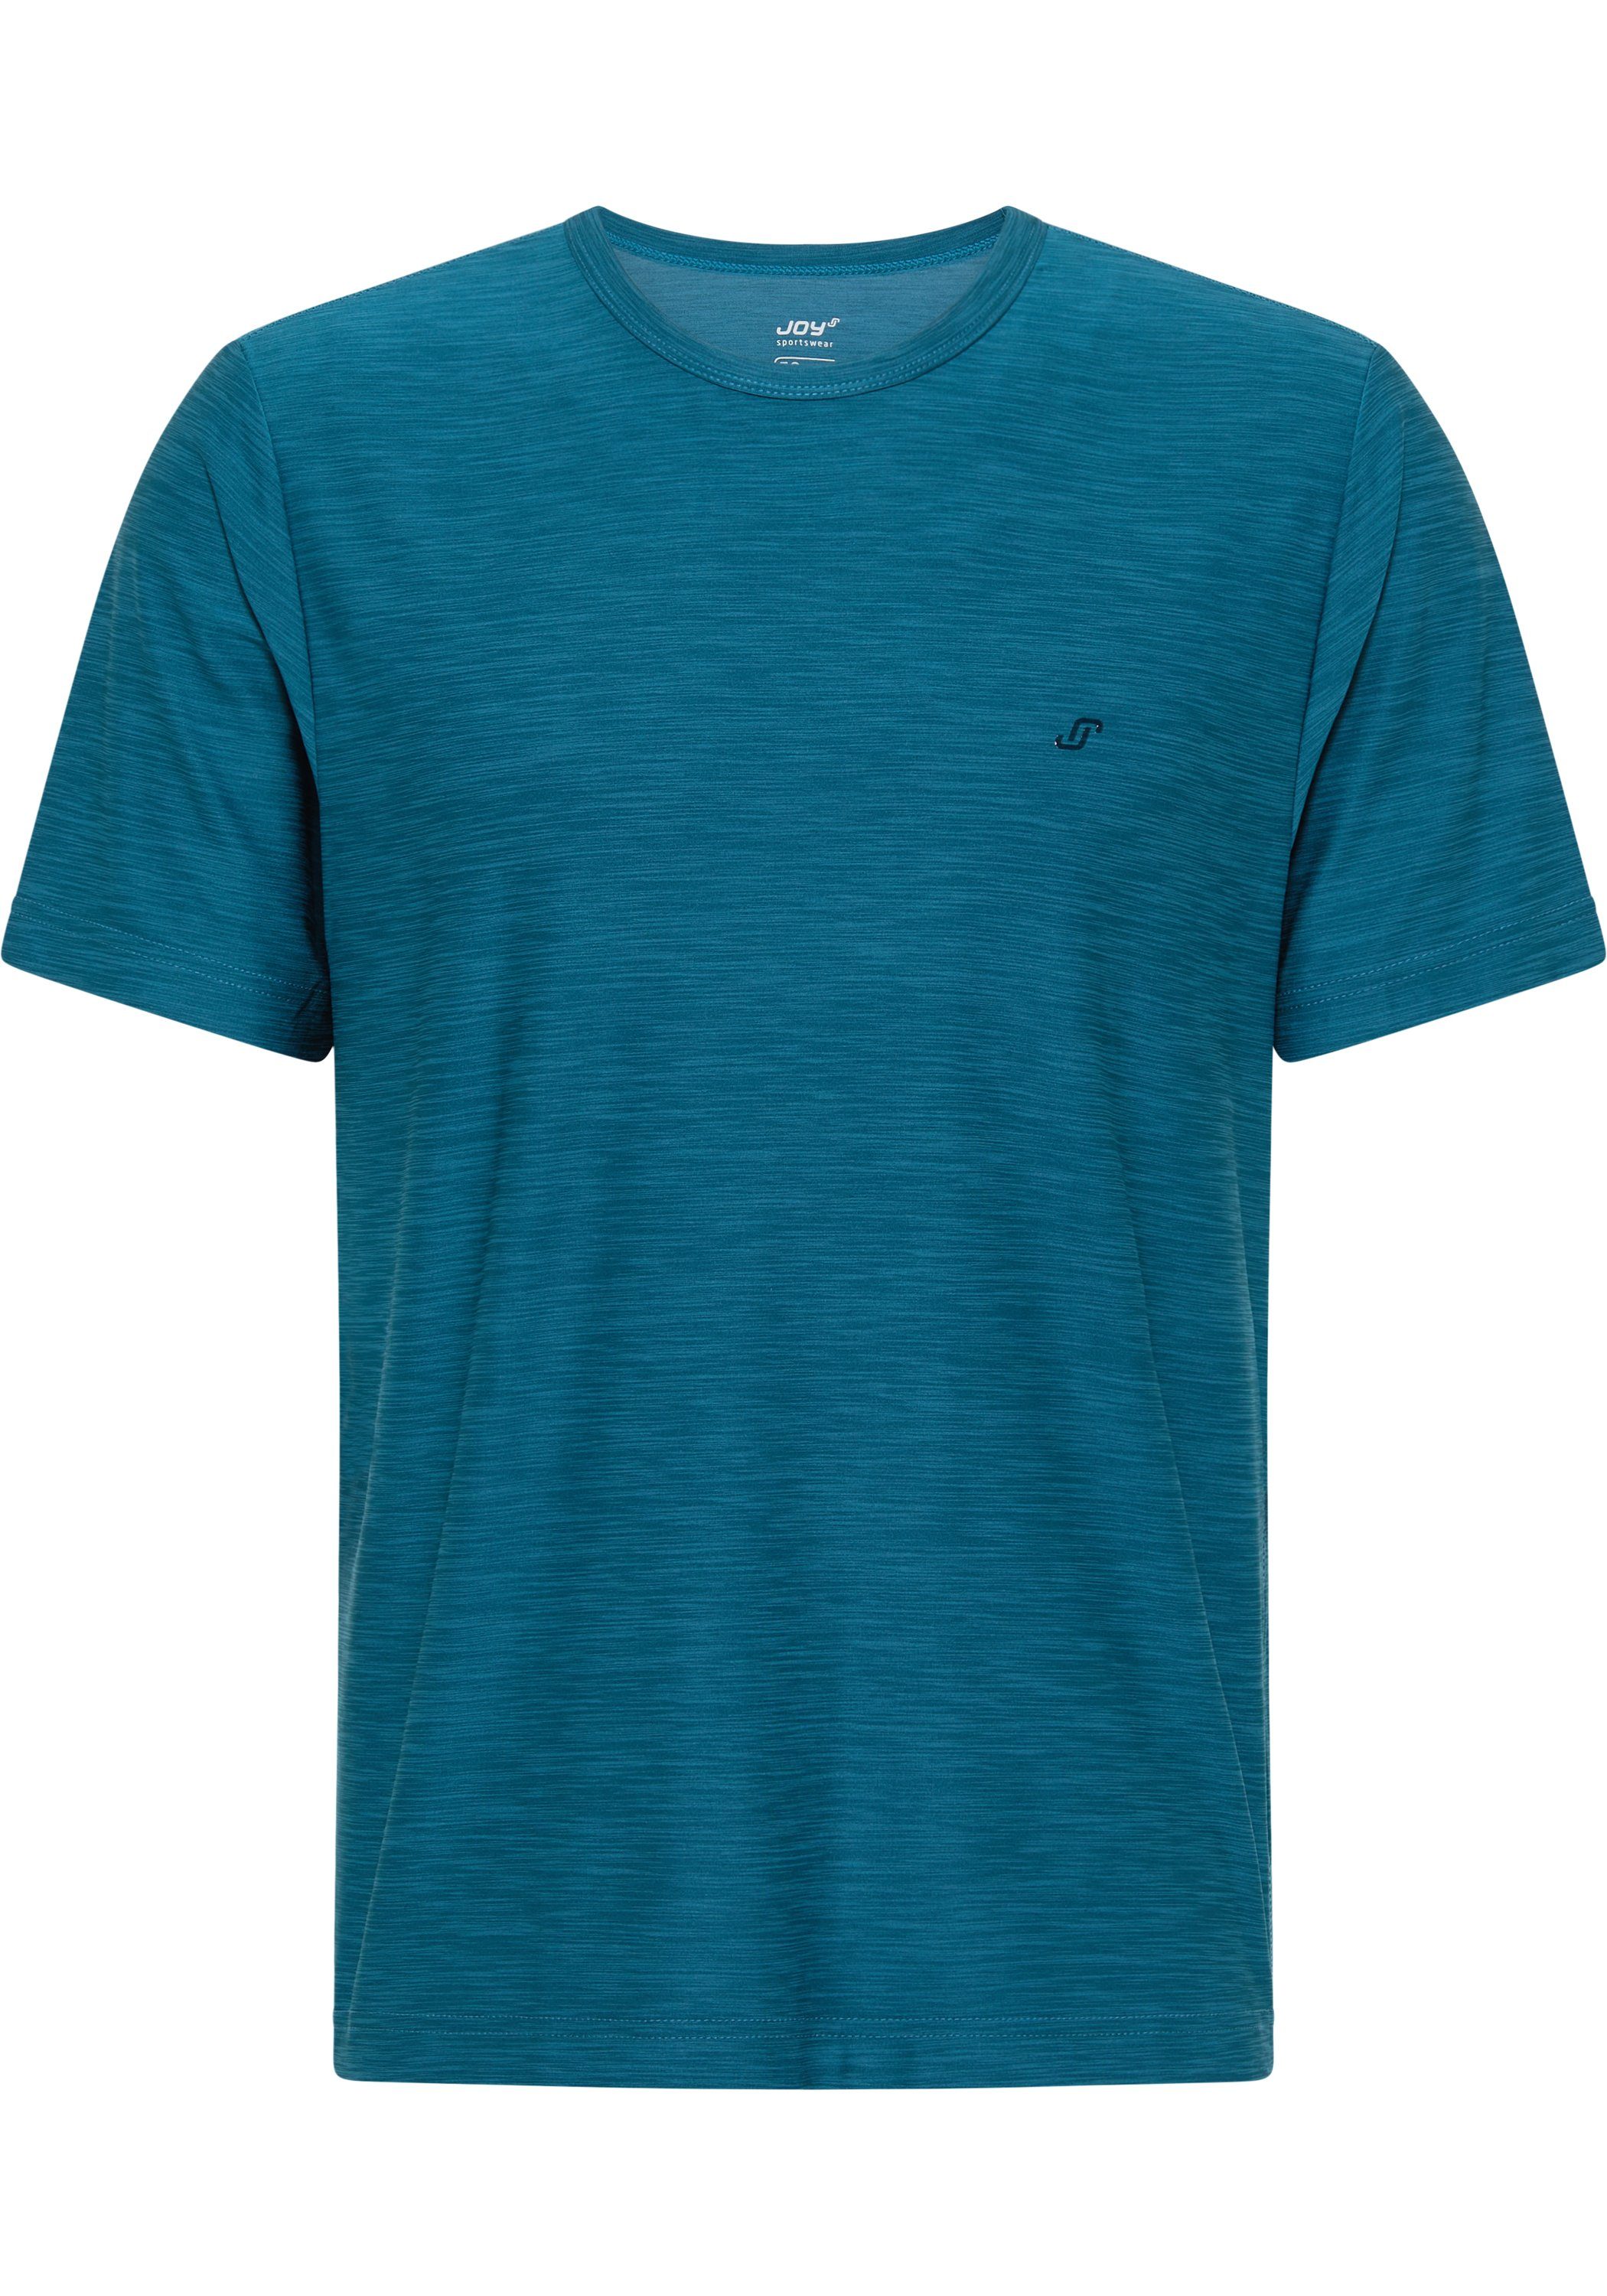 JOY & VITUS T-Shirt turquoise FUN T-Shirt Sportswear deep Joy melange